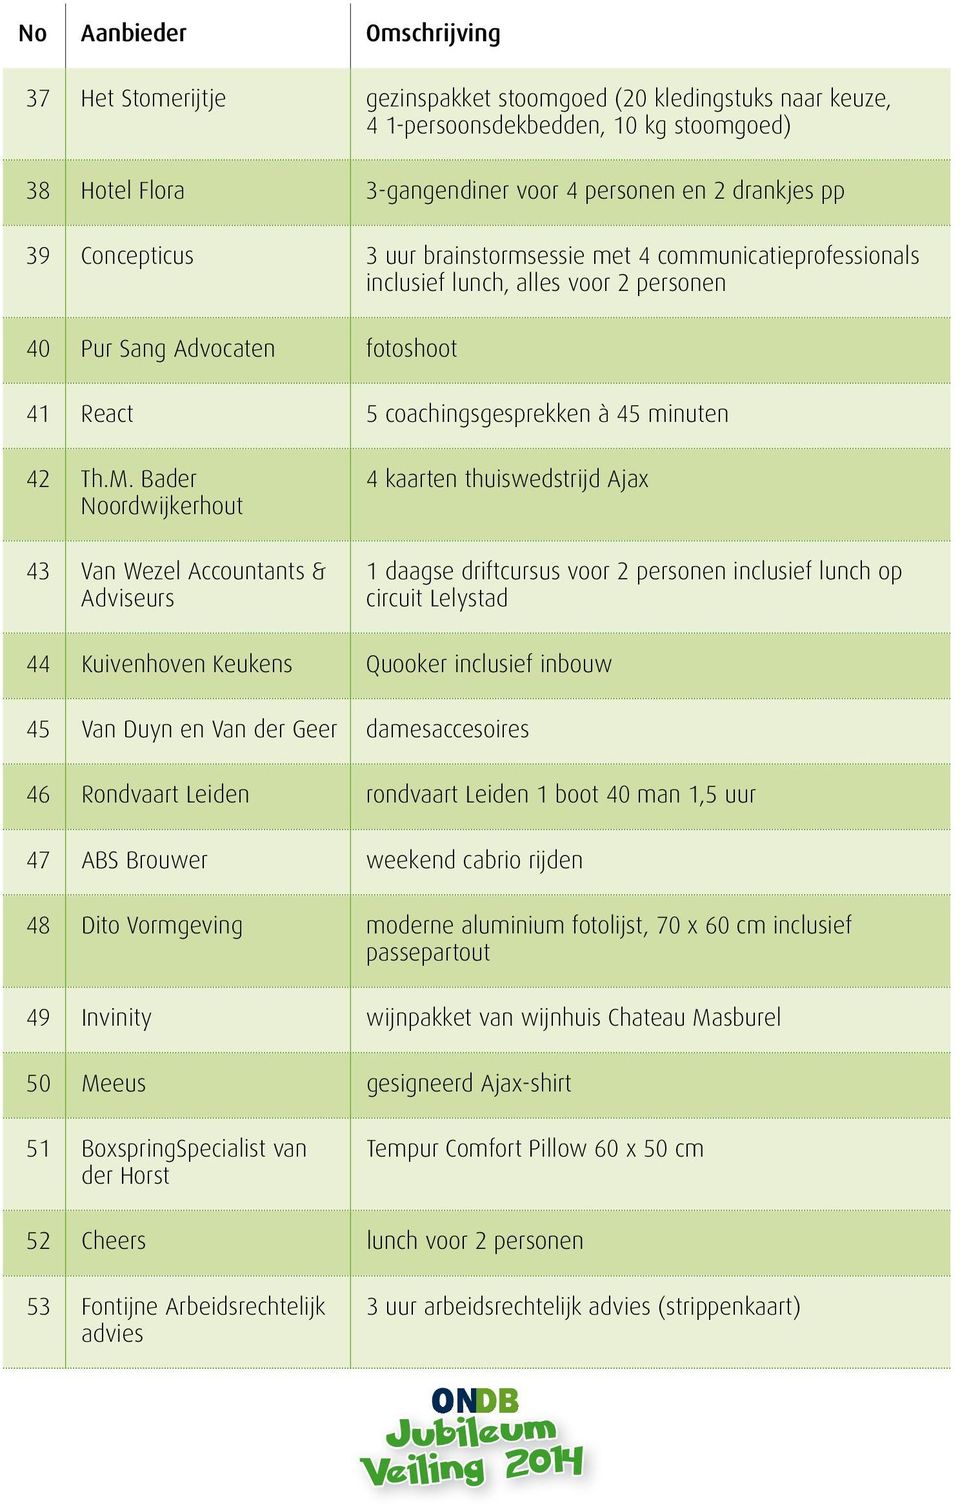 Bader Noordwijkerhout 43 Van Wezel Accountants & Adviseurs 4 kaarten thuiswedstrijd Ajax 1 daagse driftcursus voor 2 personen inclusief lunch op circuit Lelystad 44 Kuivenhoven Keukens Quooker